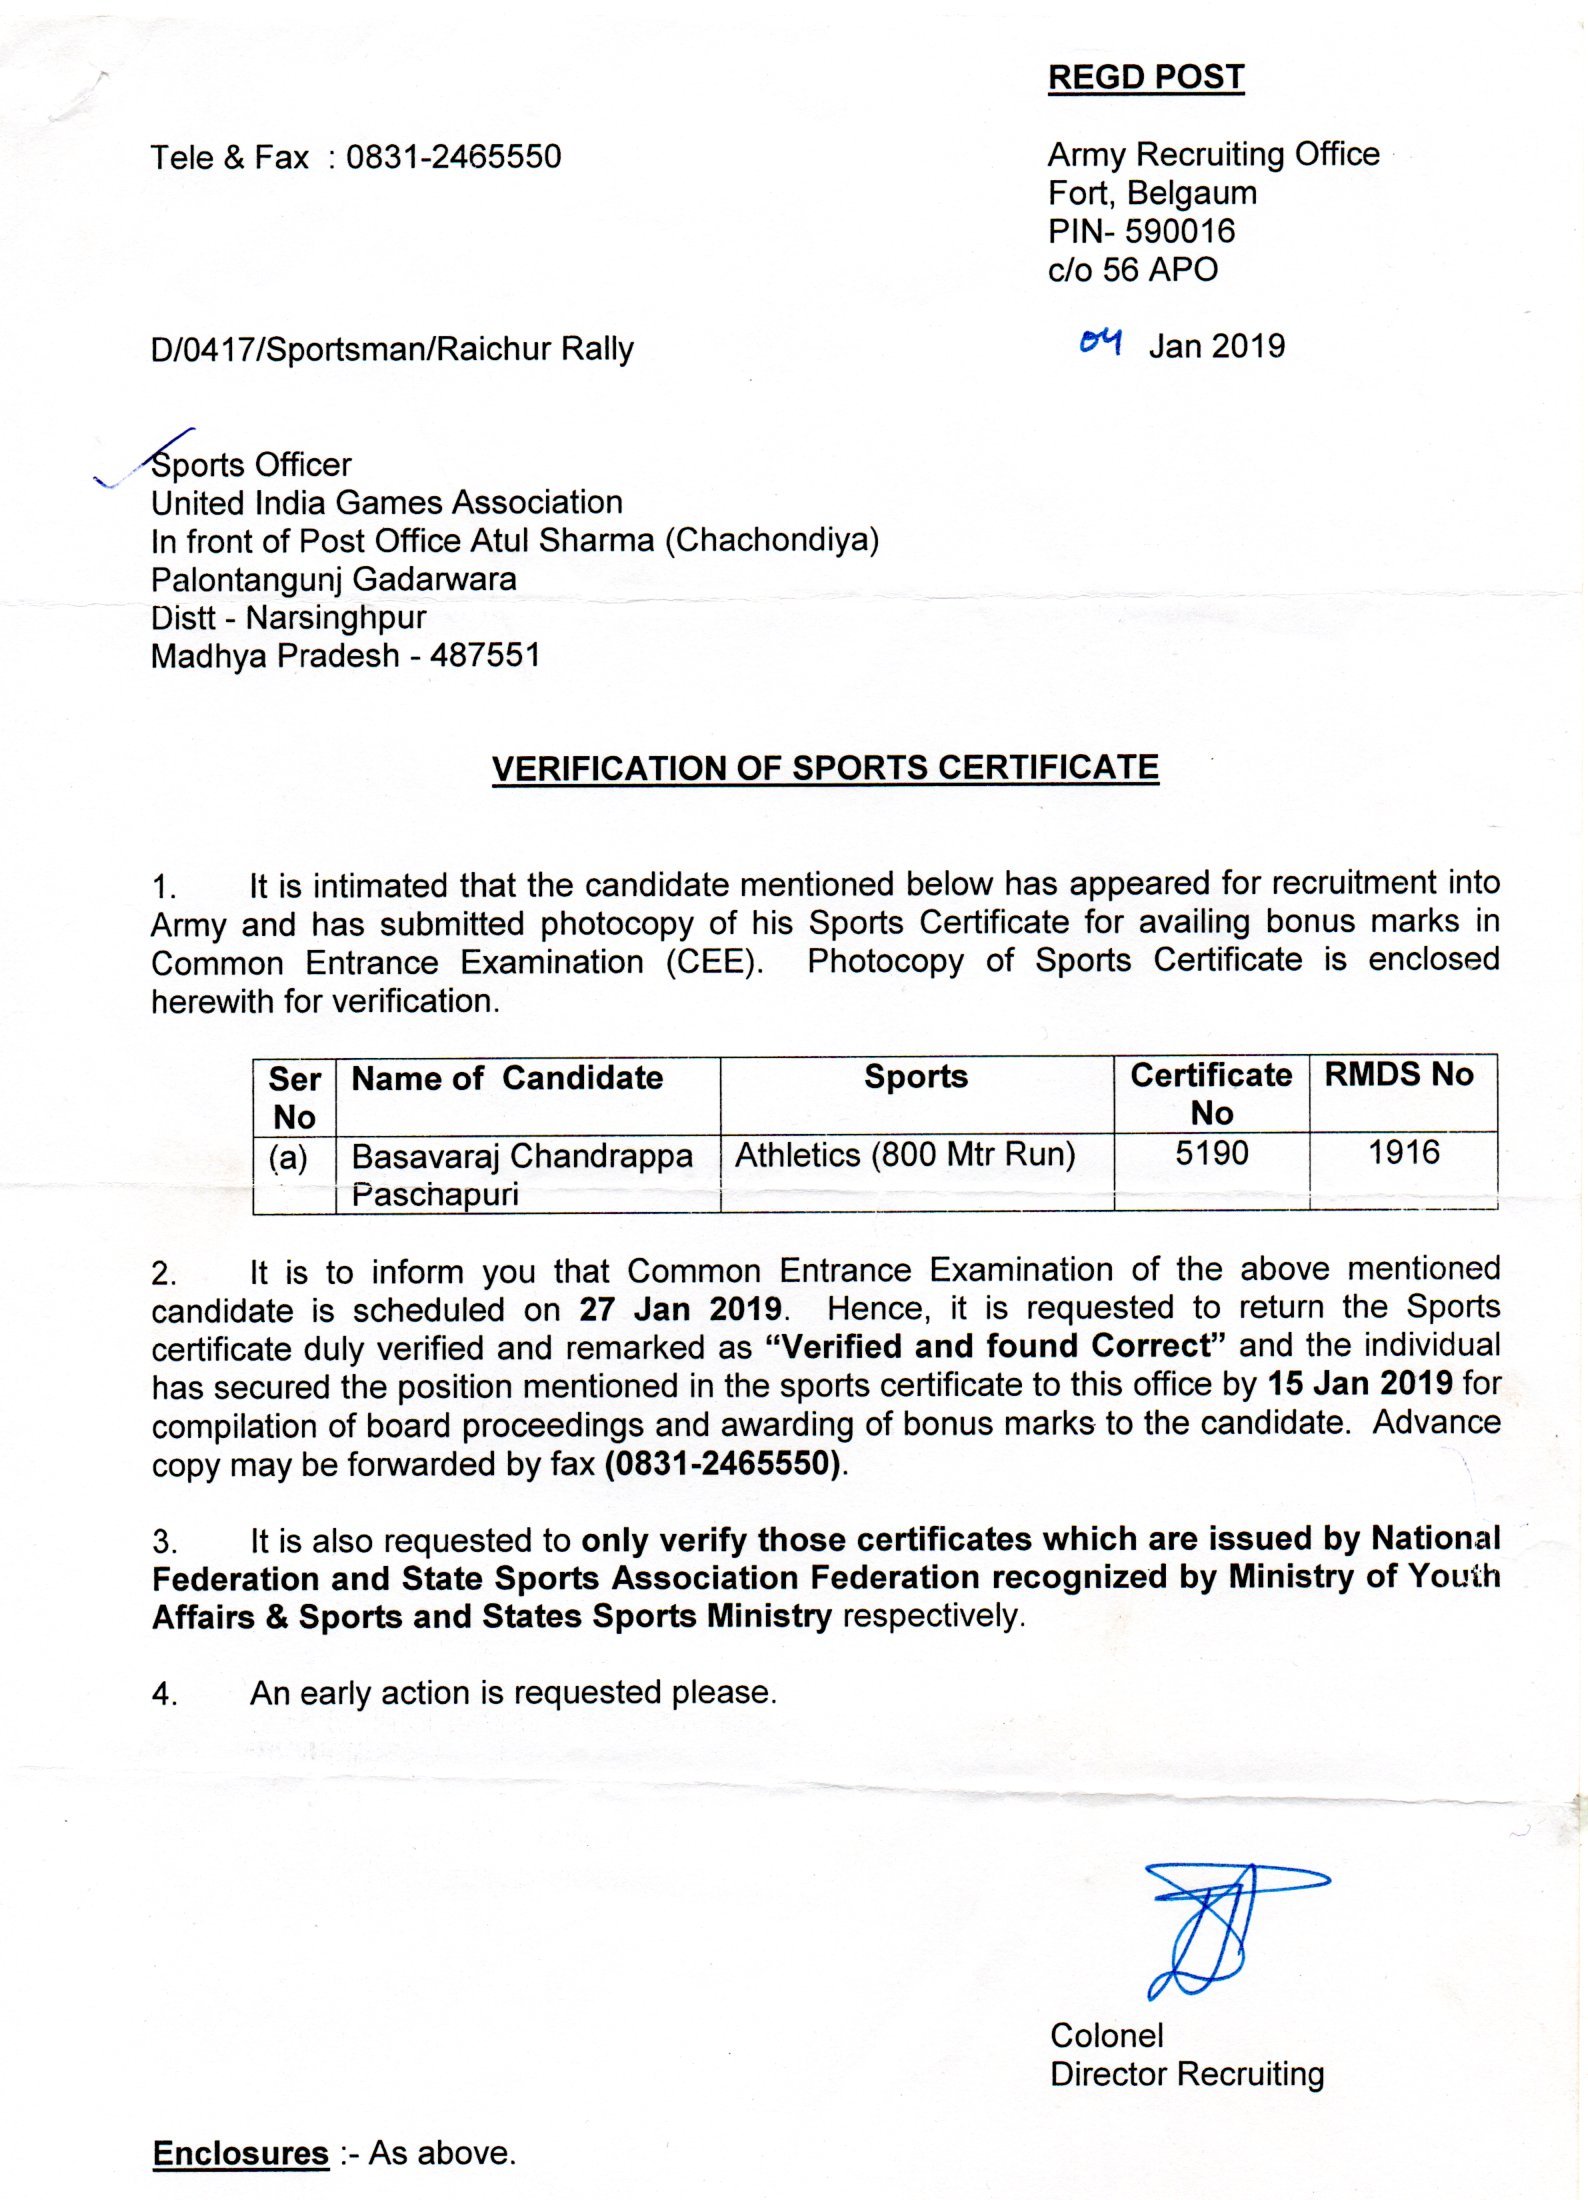 Army Recruiting Office Fort Belgaum, 2019                                                                        2019 Karnataka - PIN - 590016